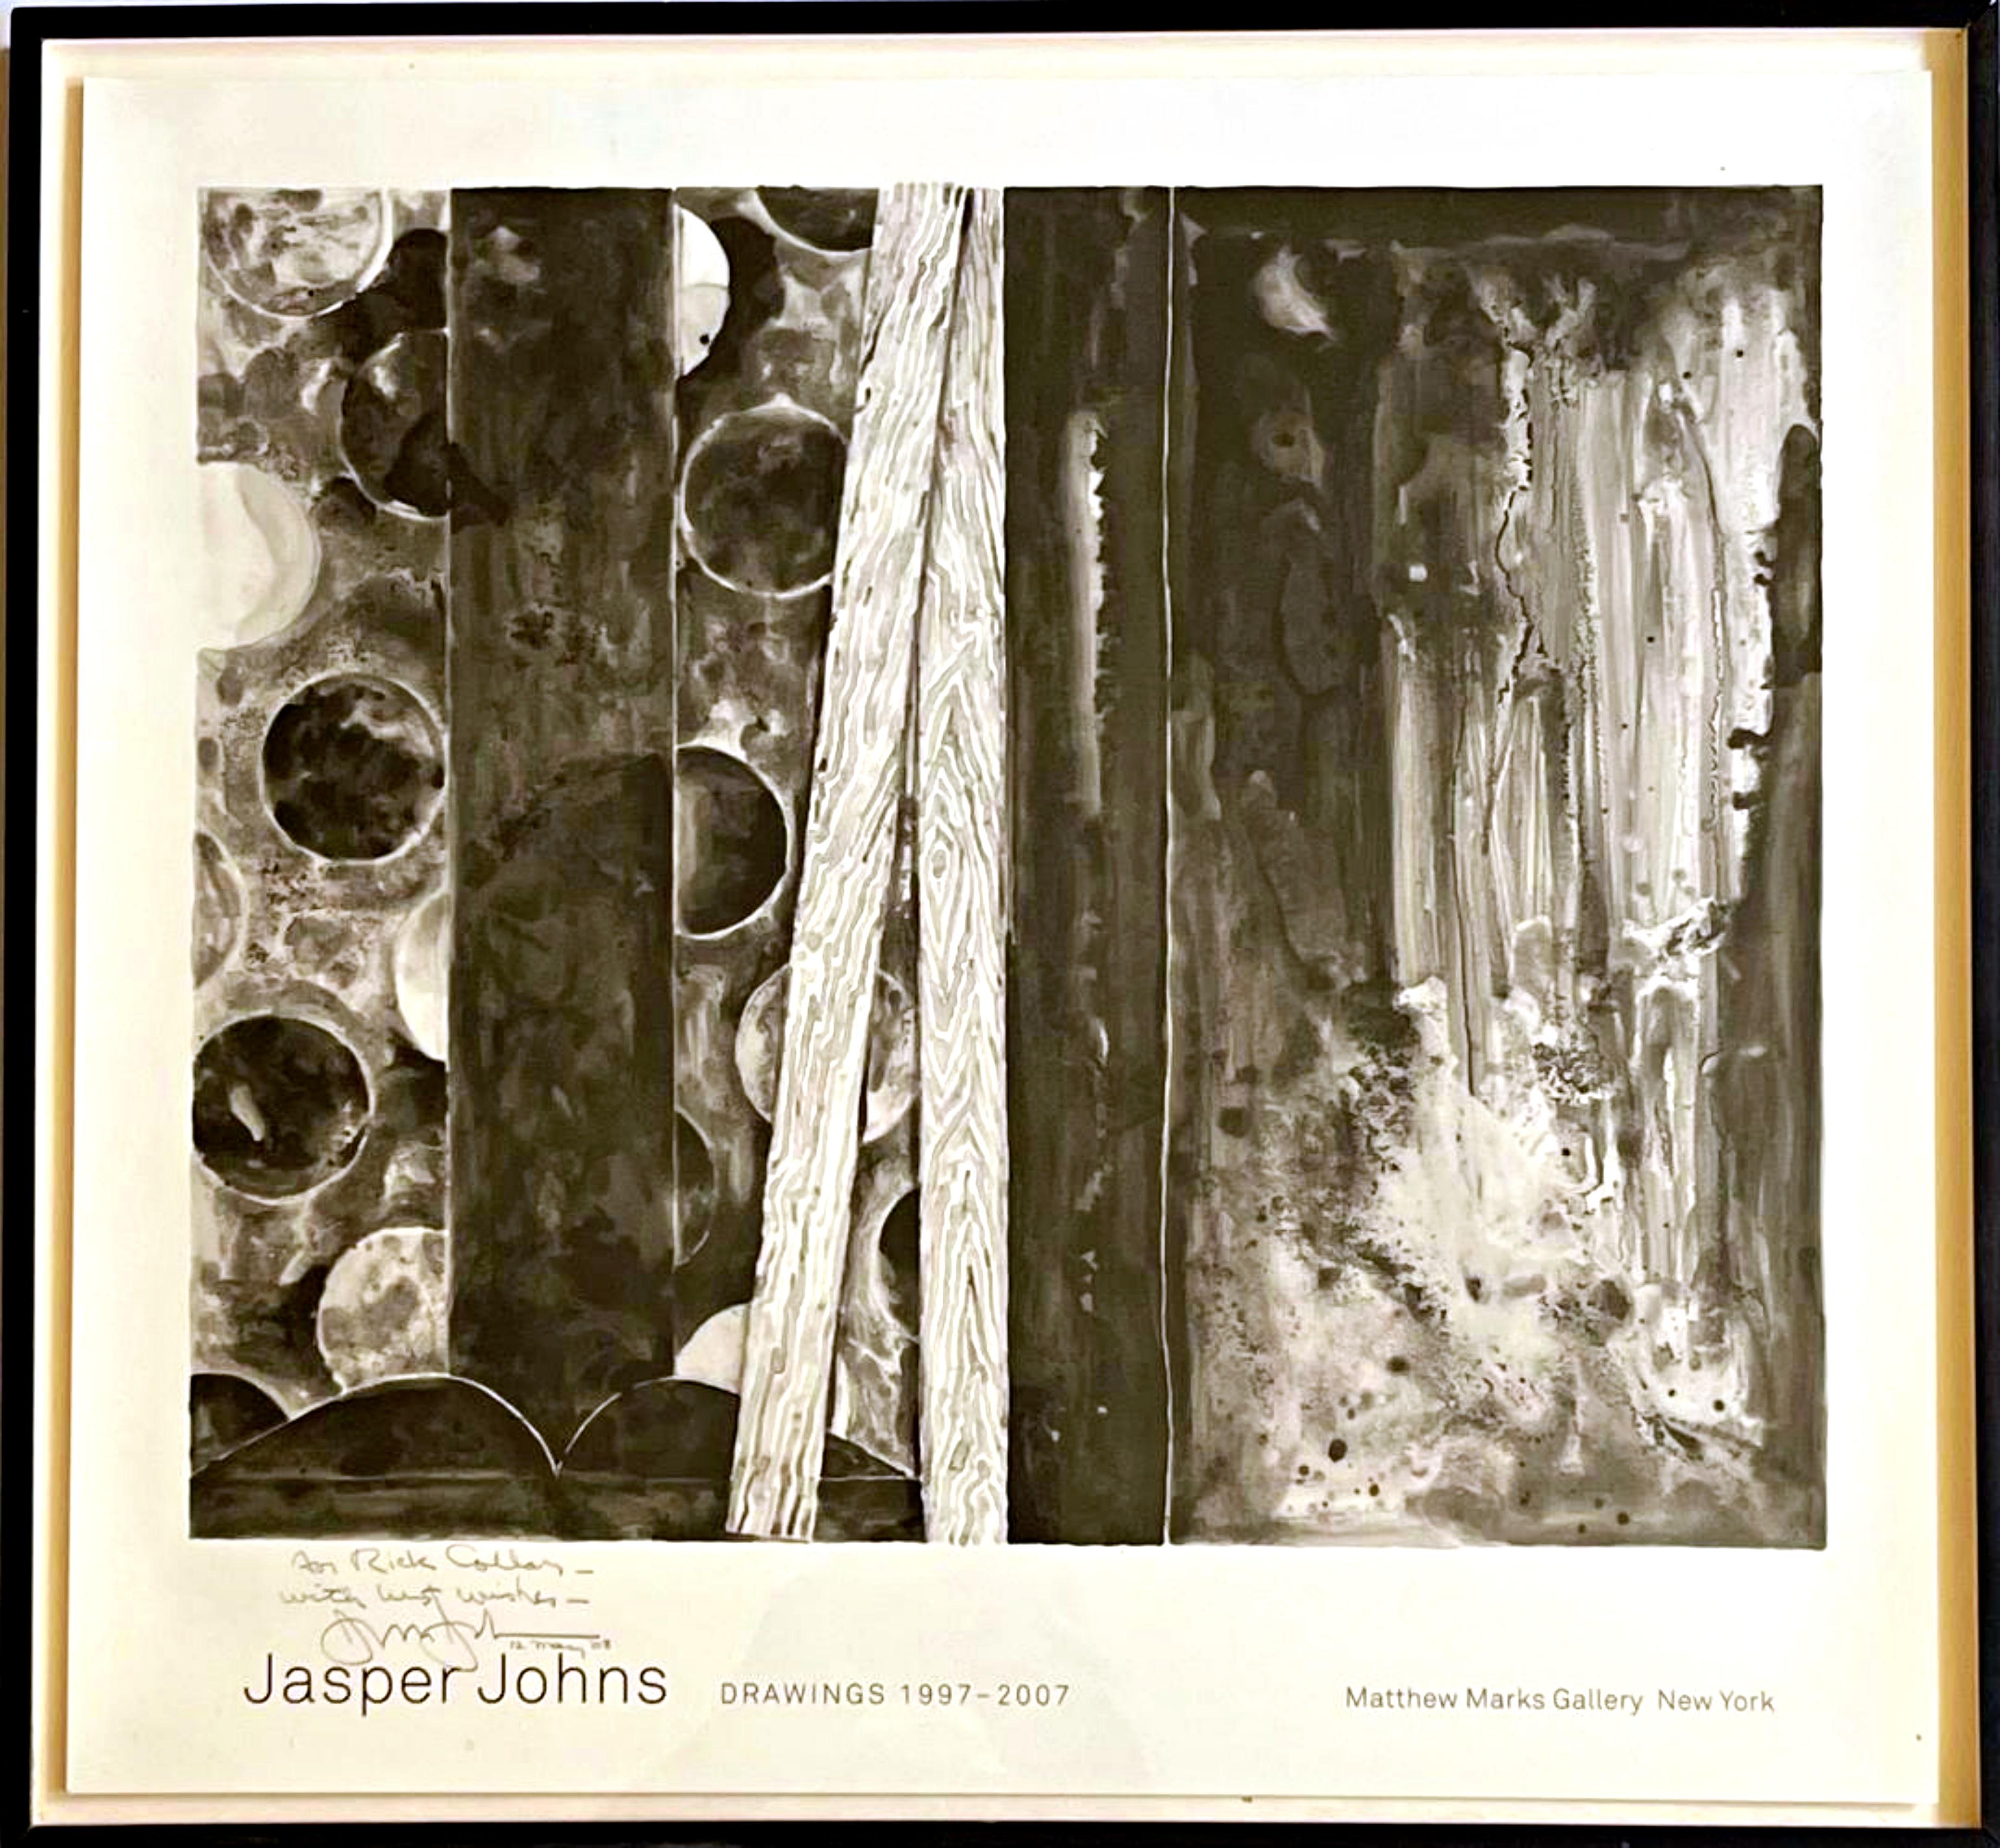 Jasper Johns Drawings 1997-2007, Matthew Marks Gallery (signature unique, inscription et date), 2008
Lithographie offset
19 1/2 × 21 1/2 pouces (feuille)
Signée, datée du 12 mai 2008 et portant la chaleureuse inscription "For Rick Collar With Best